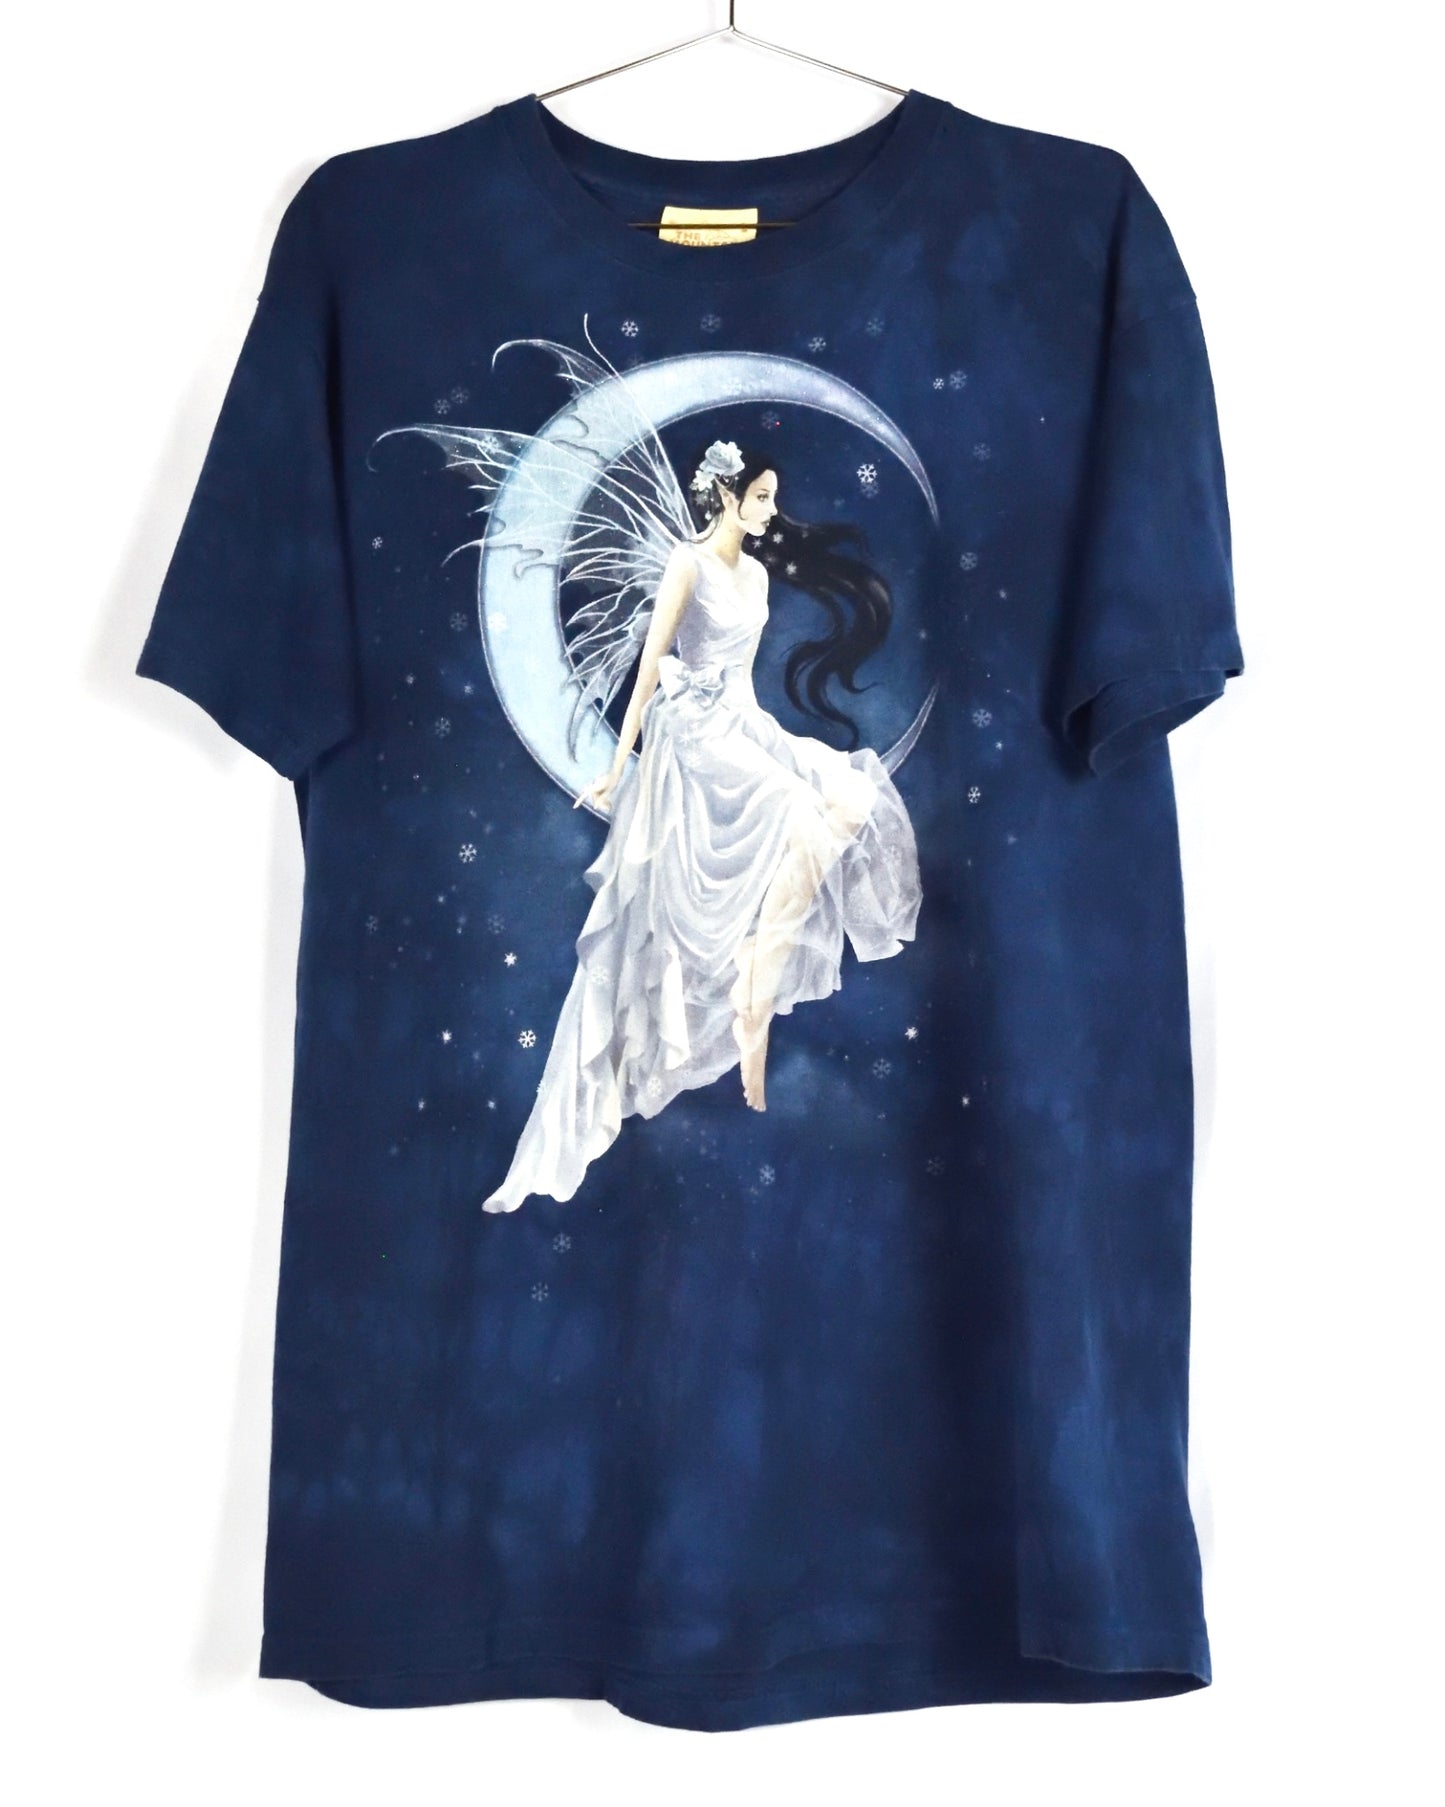 Moon goddess t-shirt